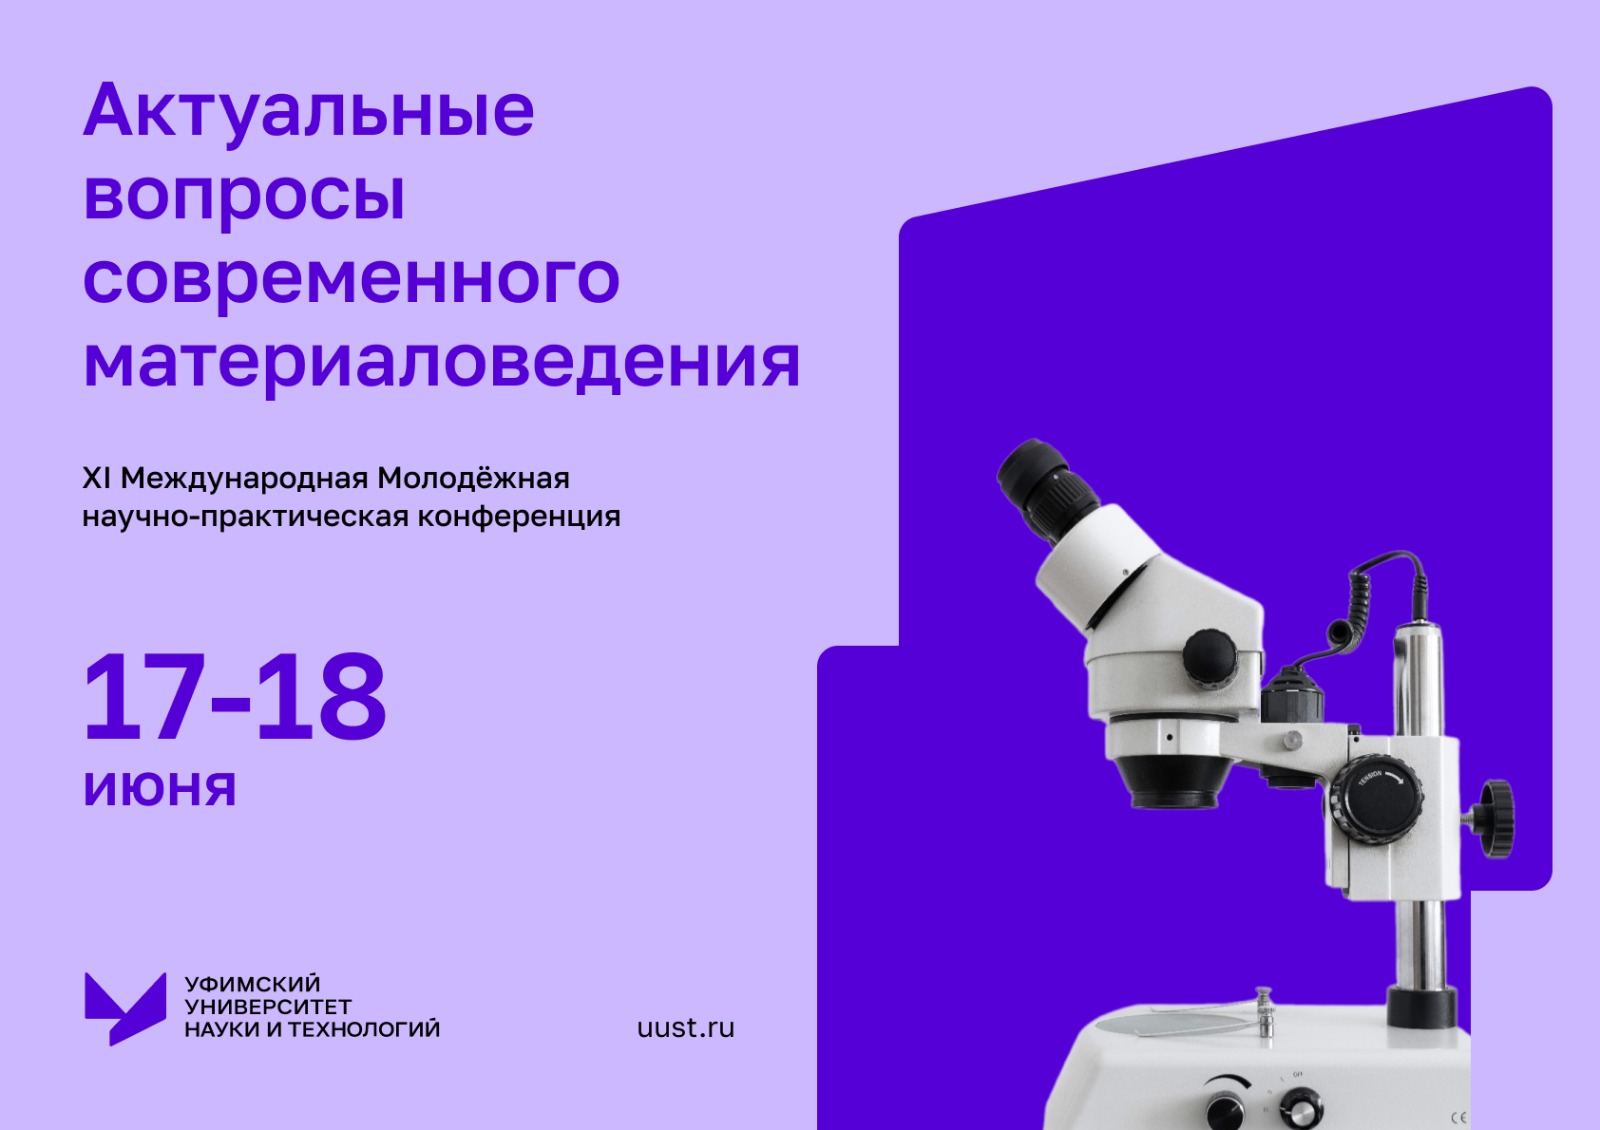 Приглашаем принять участие в XI Международной молодежной научно-практической конференции «Актуальные вопросы современного материаловедения"